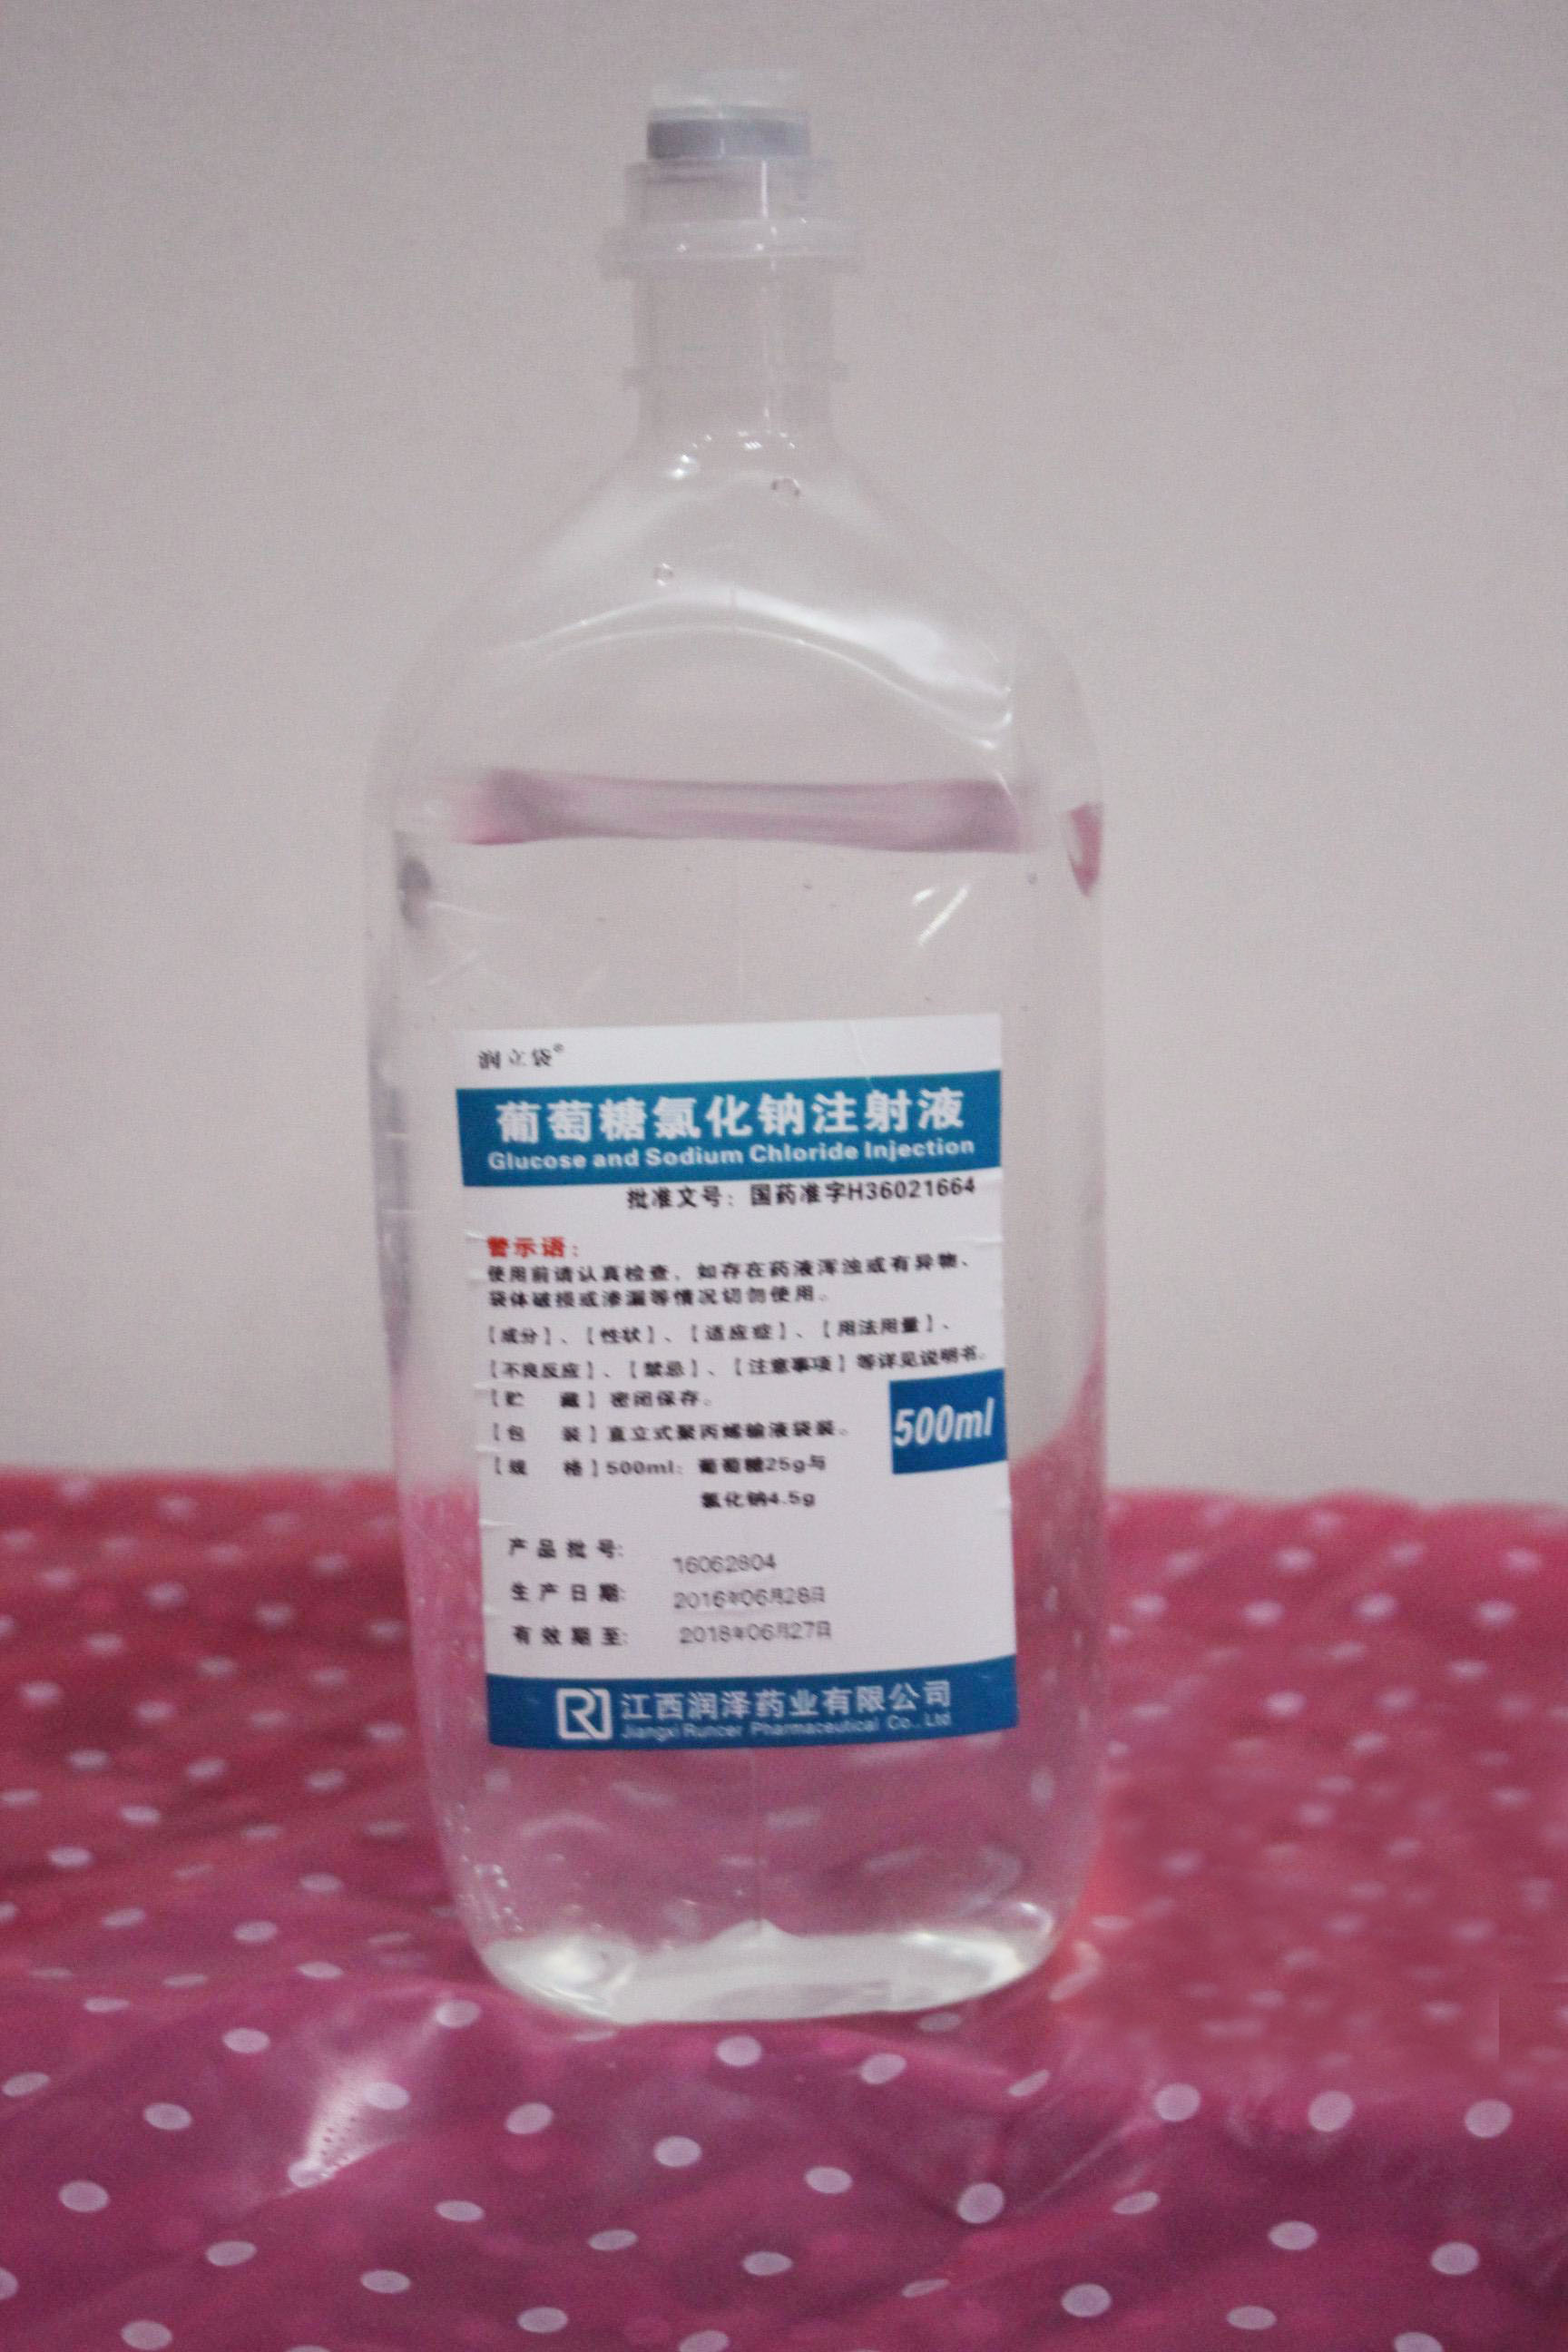 乳酸左氧氟沙星氯化钠注射液,贵州天地药业有限责任公司